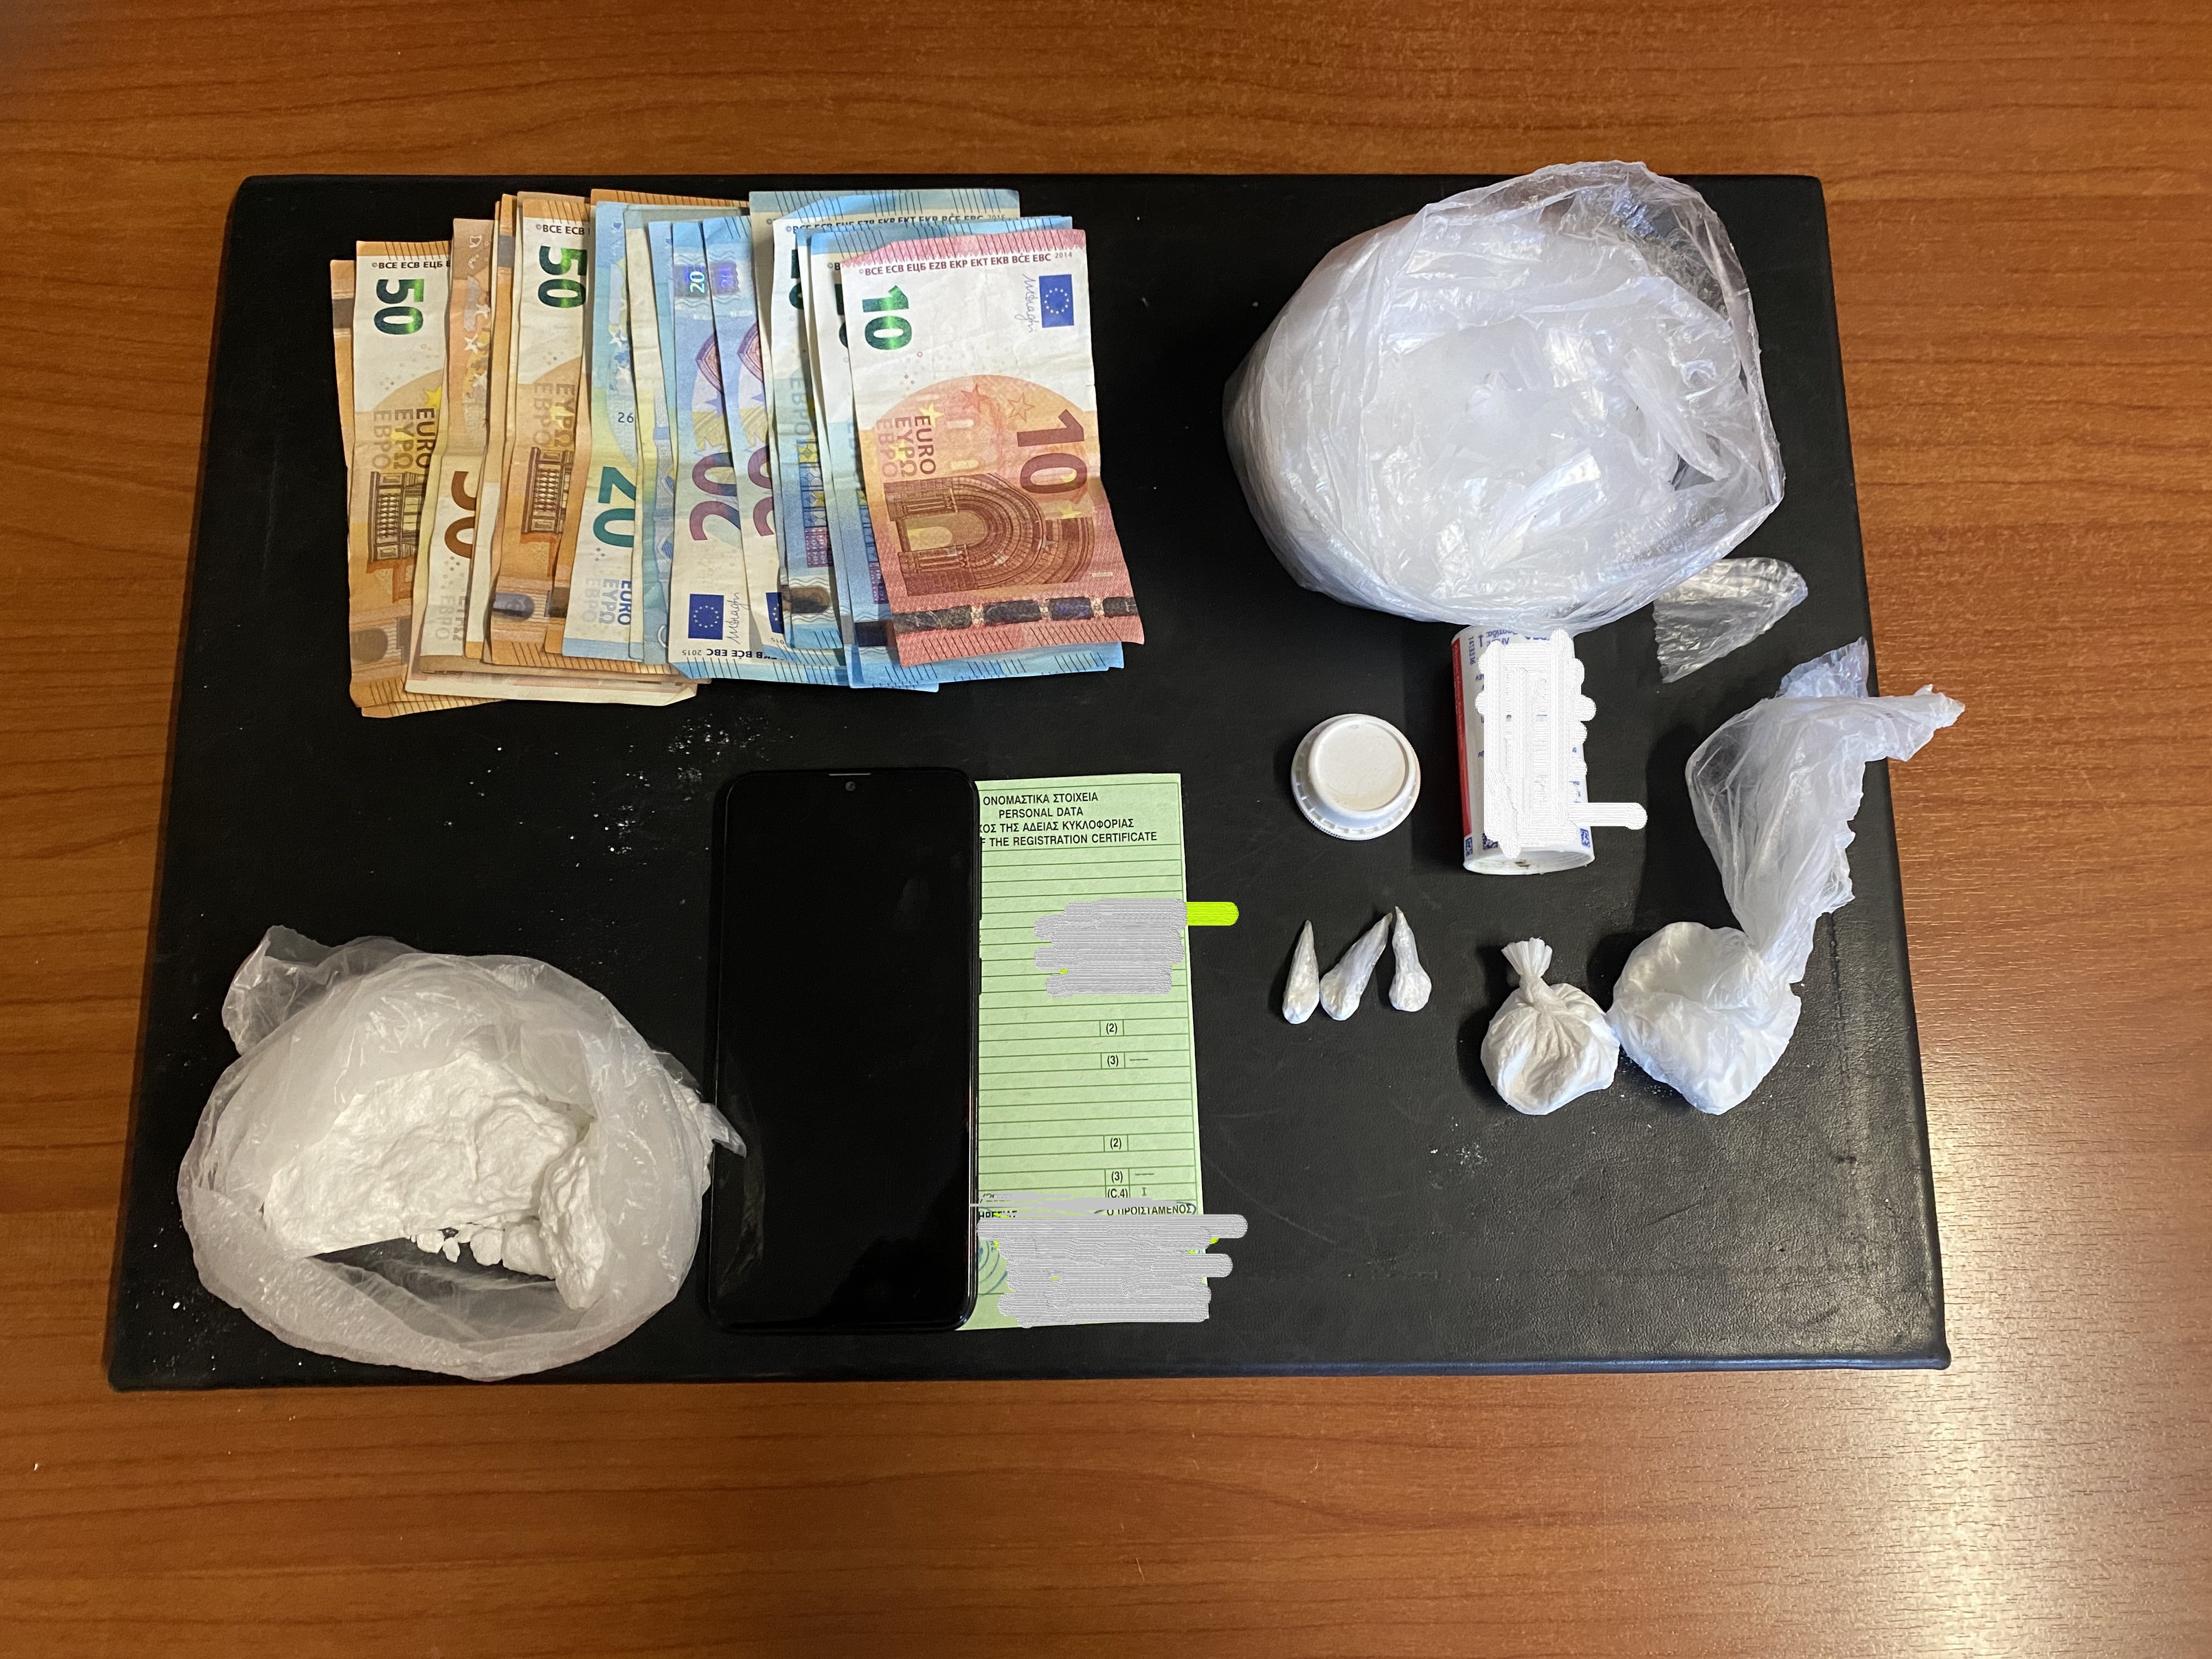 Νέα σύλληψη με σημαντική ποσότητα κοκαΐνης σε περιοχή της Χερσονήσου!